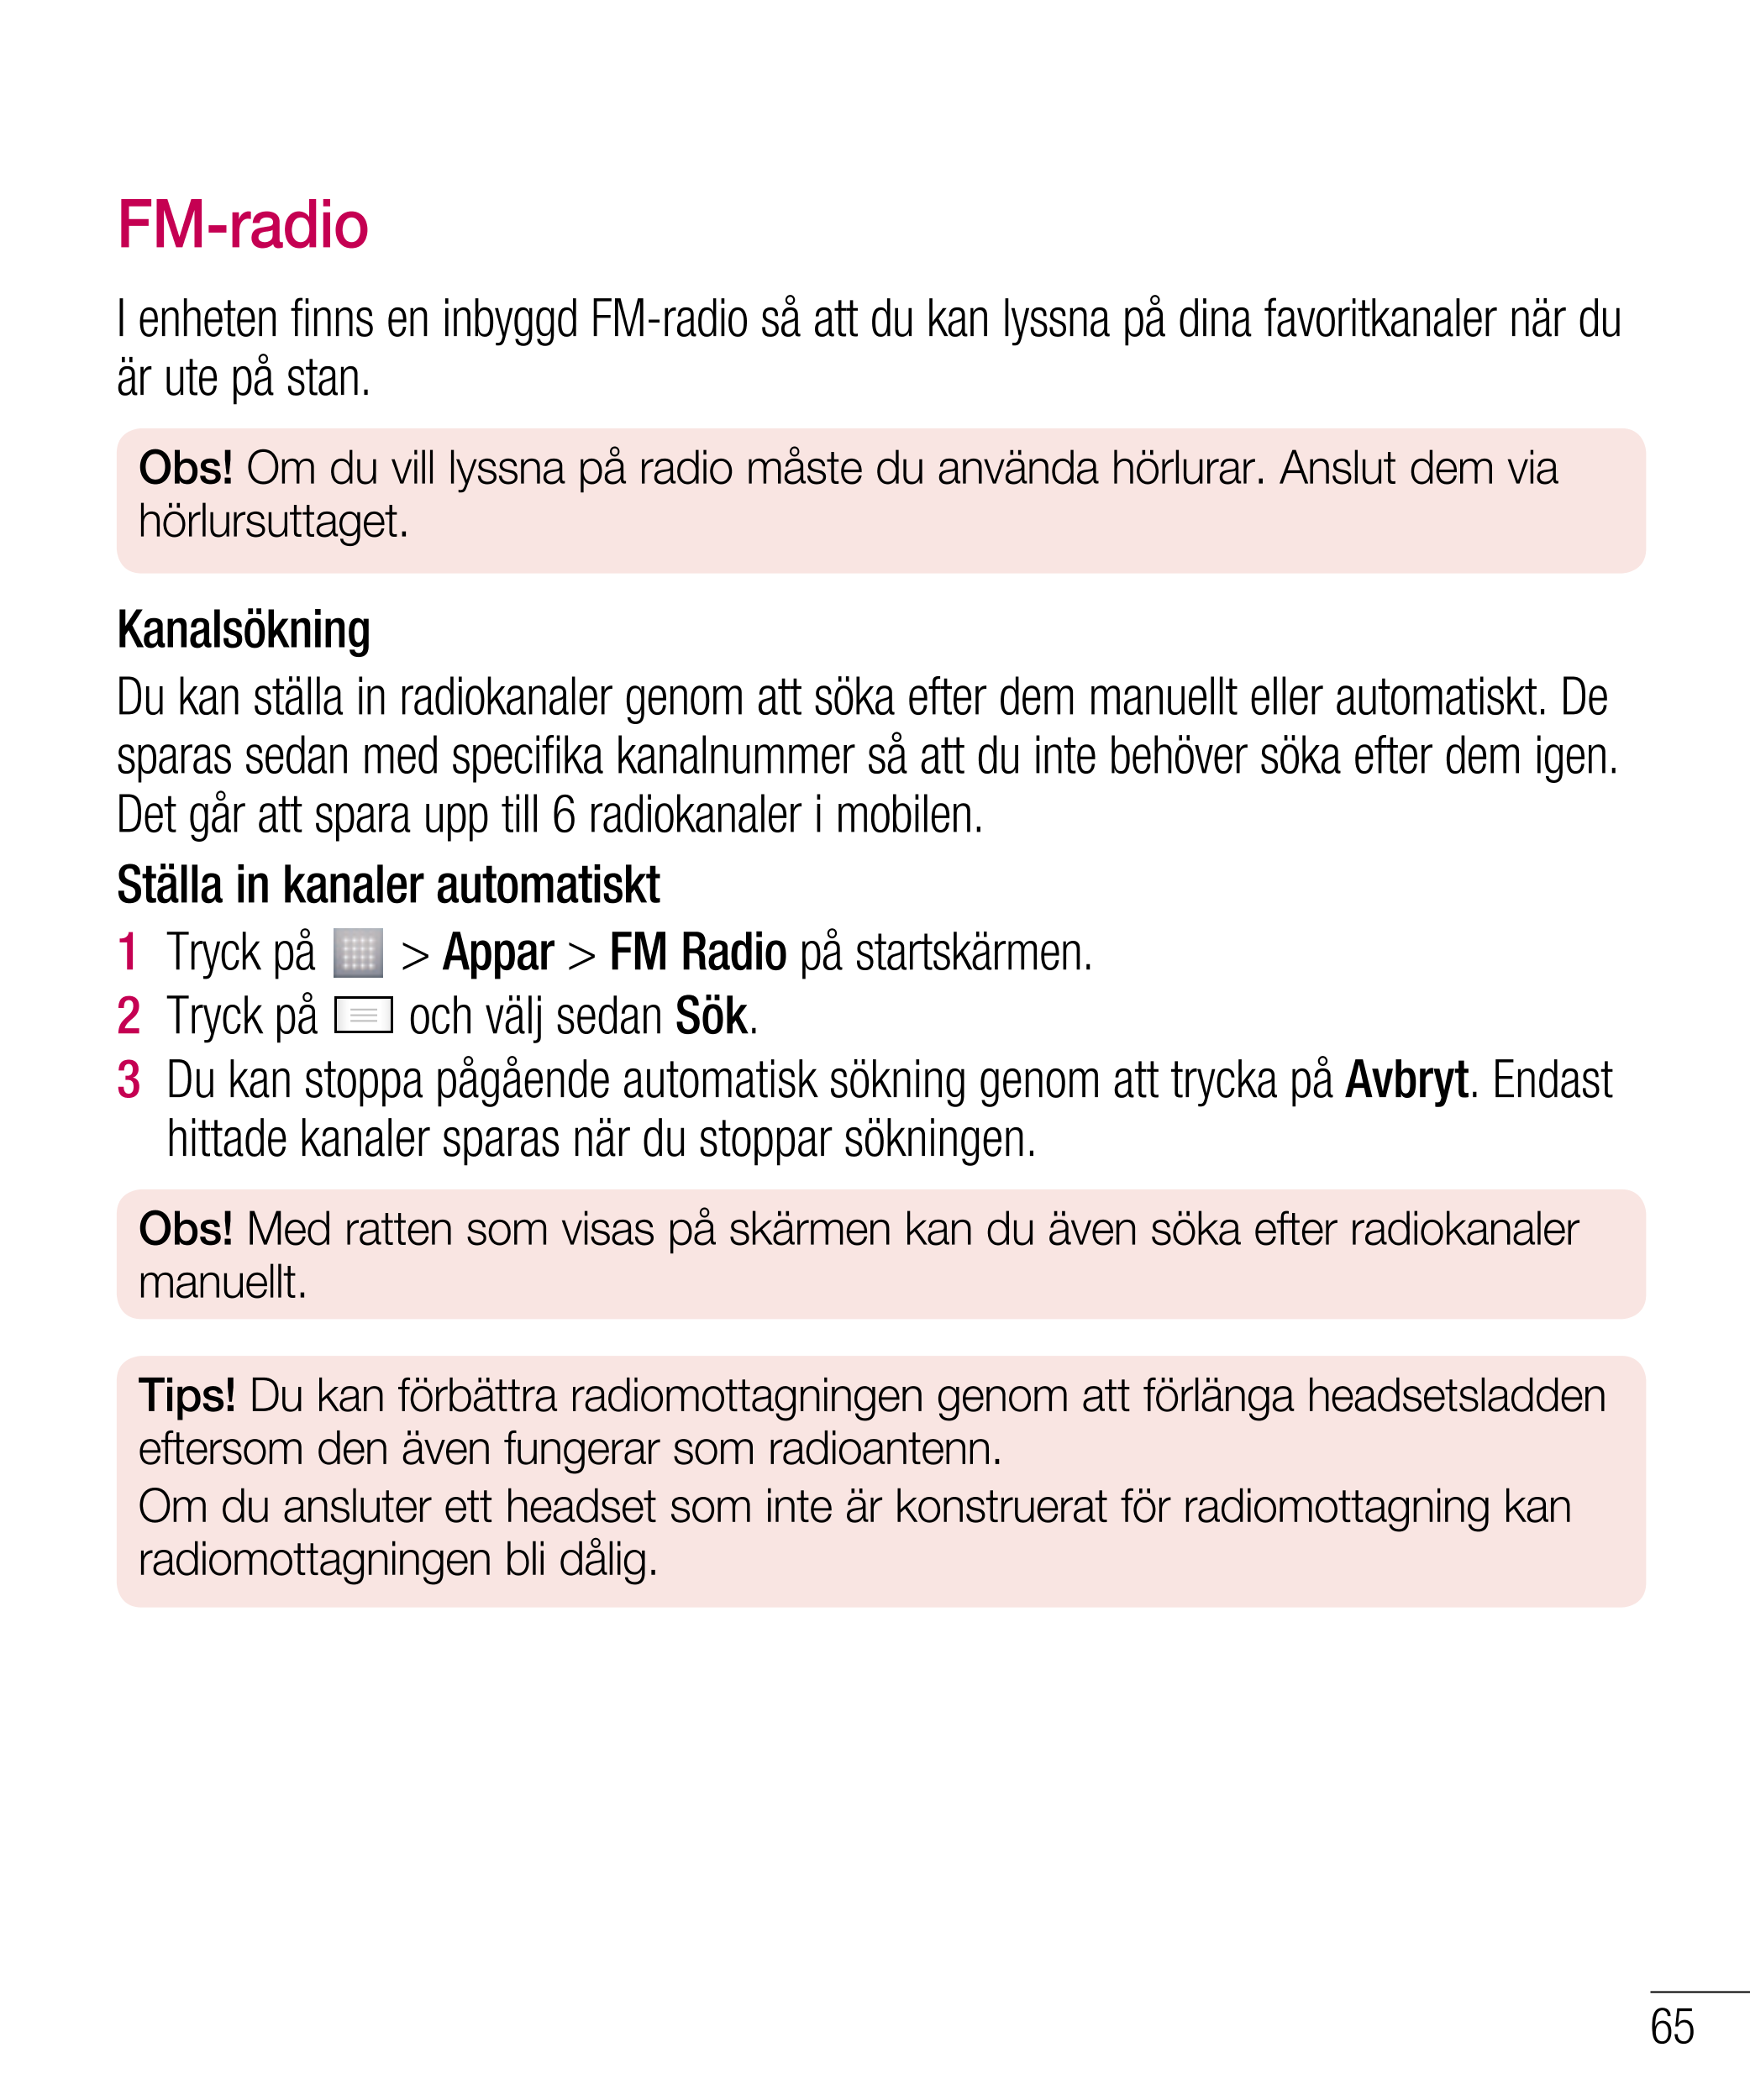 FM-radio
I enheten finns en inbyggd FM-radio så att du kan lyssna på dina favoritkanaler när du 
är ute på stan.
Obs! Om du vill